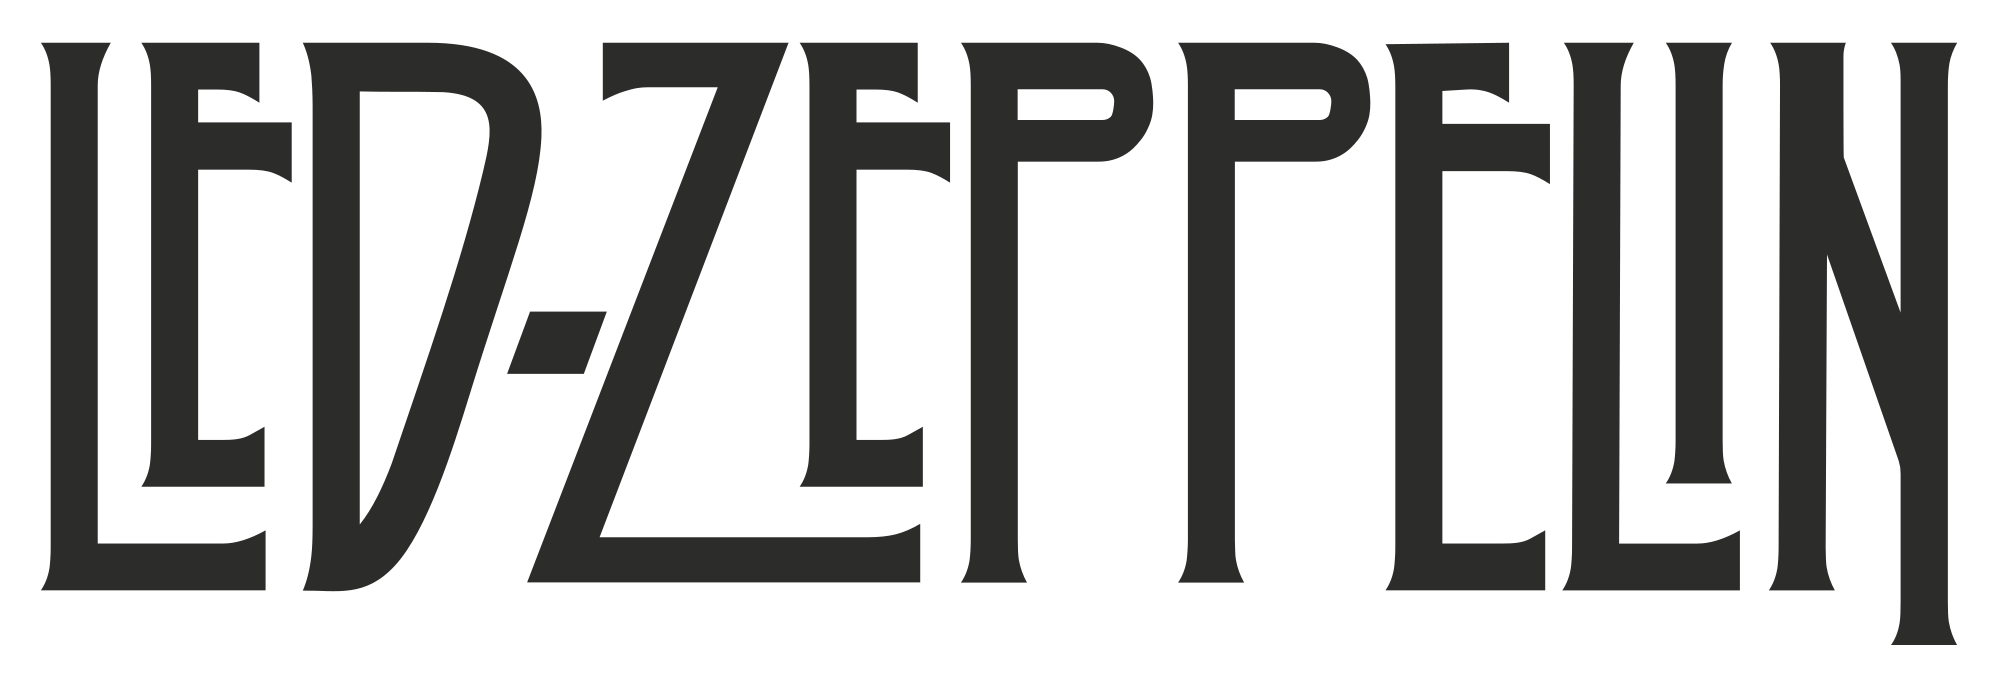 LED Zeppelin Logo - File:Led Zeppelin logo.svg - Wikimedia Commons